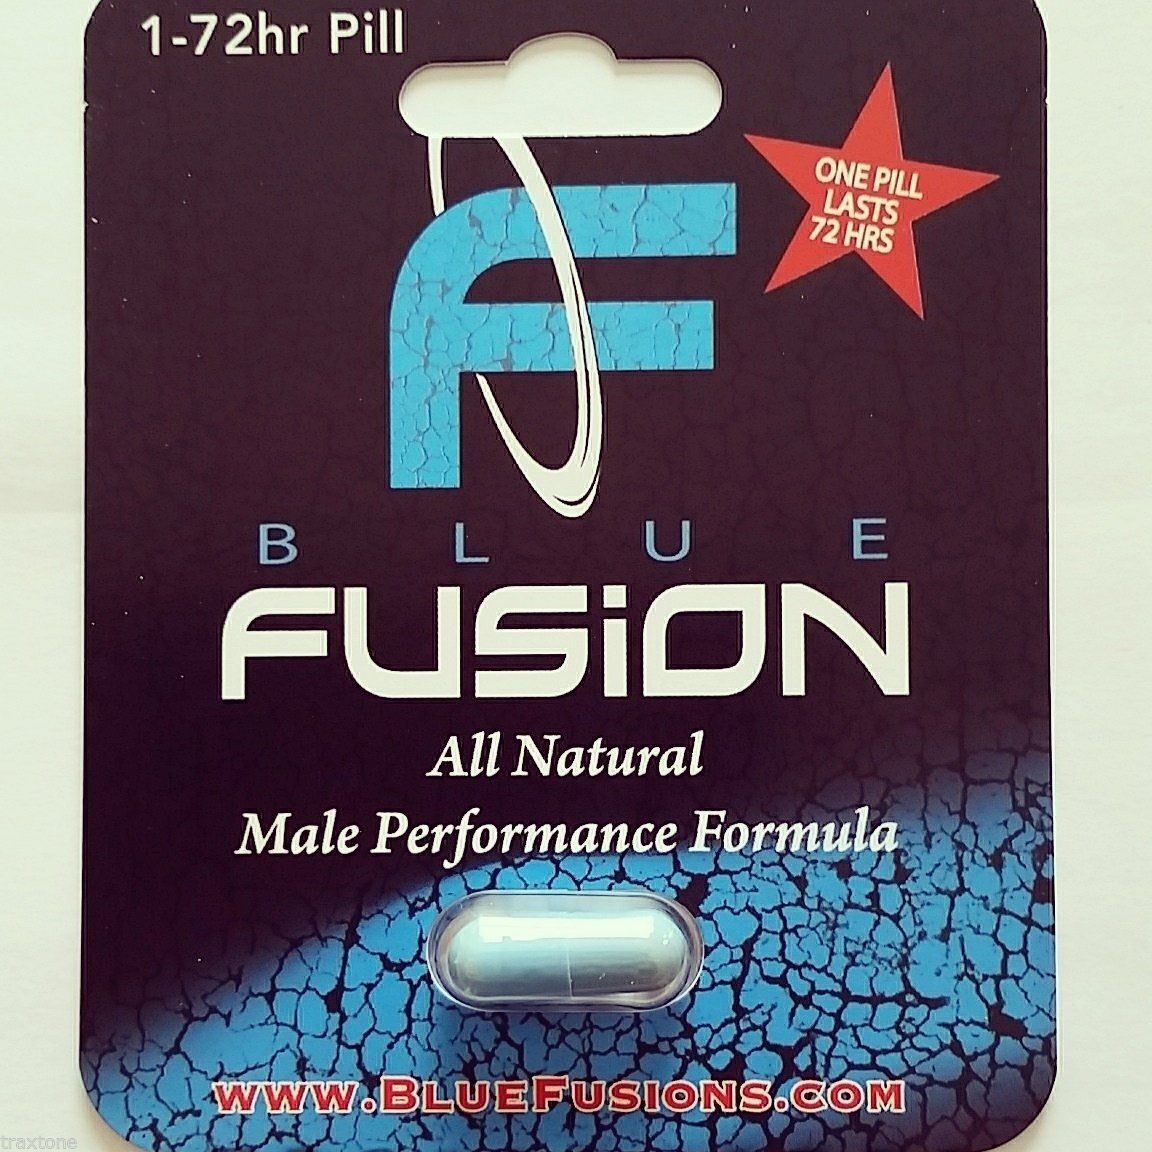 Blaue Fusion Bliser-Karte, die für männliche Tabletten, wässrige Beschichtung verpackt